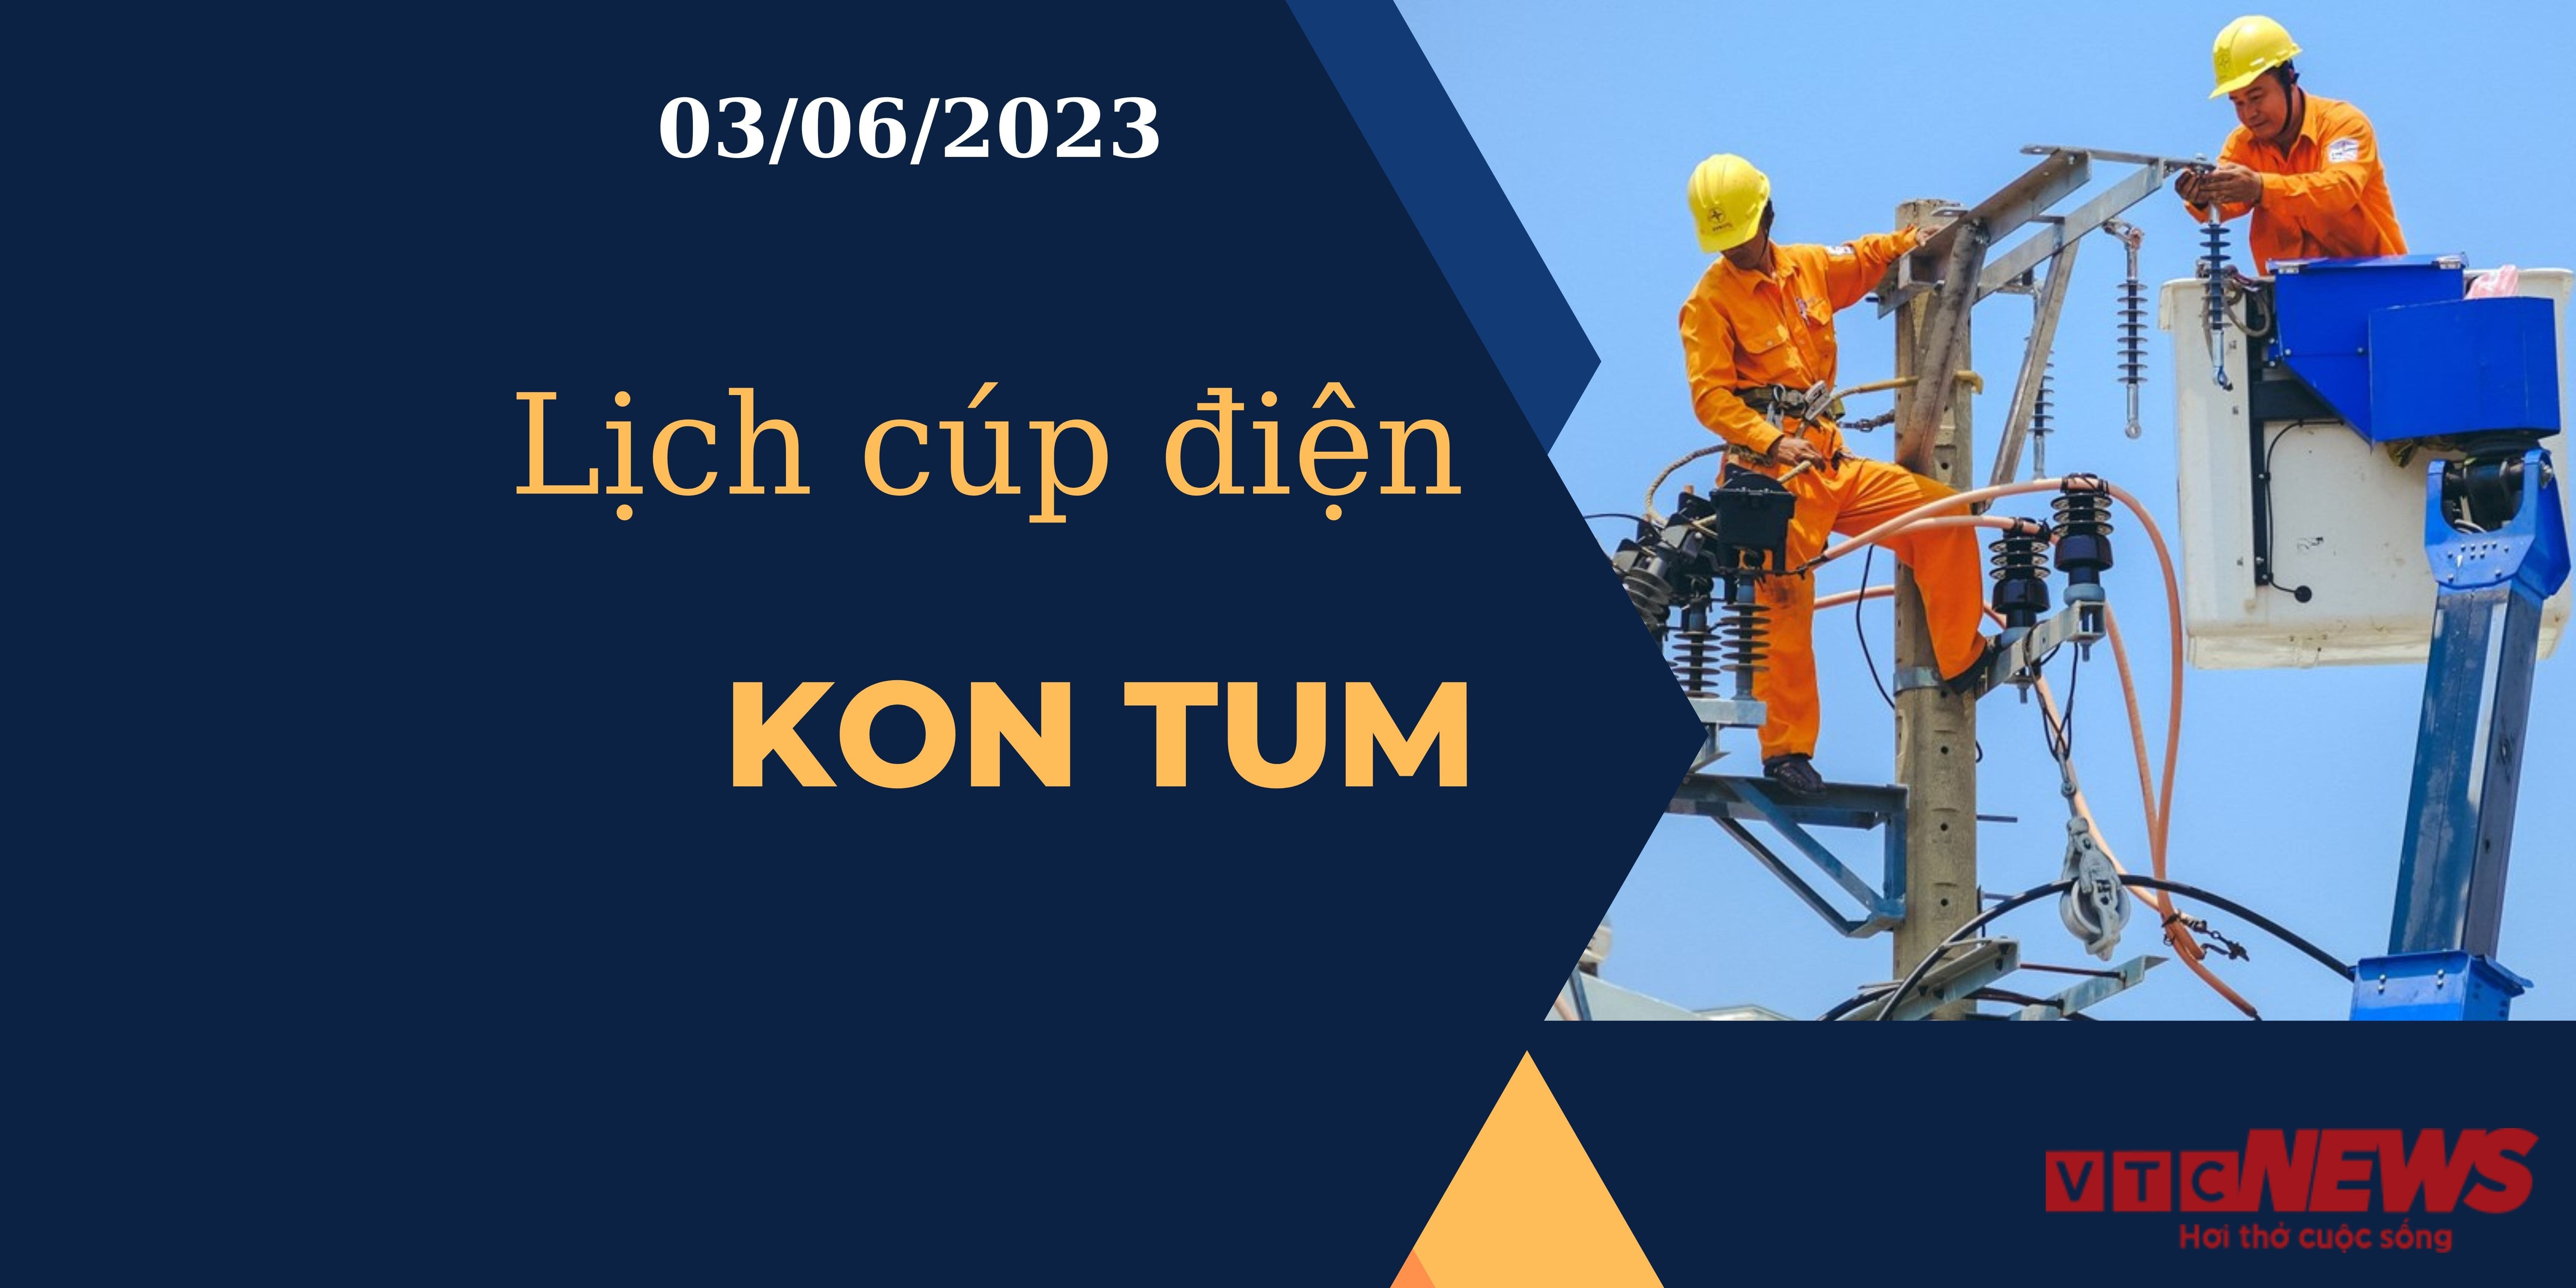 Lịch cúp điện hôm nay tại Kon Tum ngày 03/06/2023 - 1